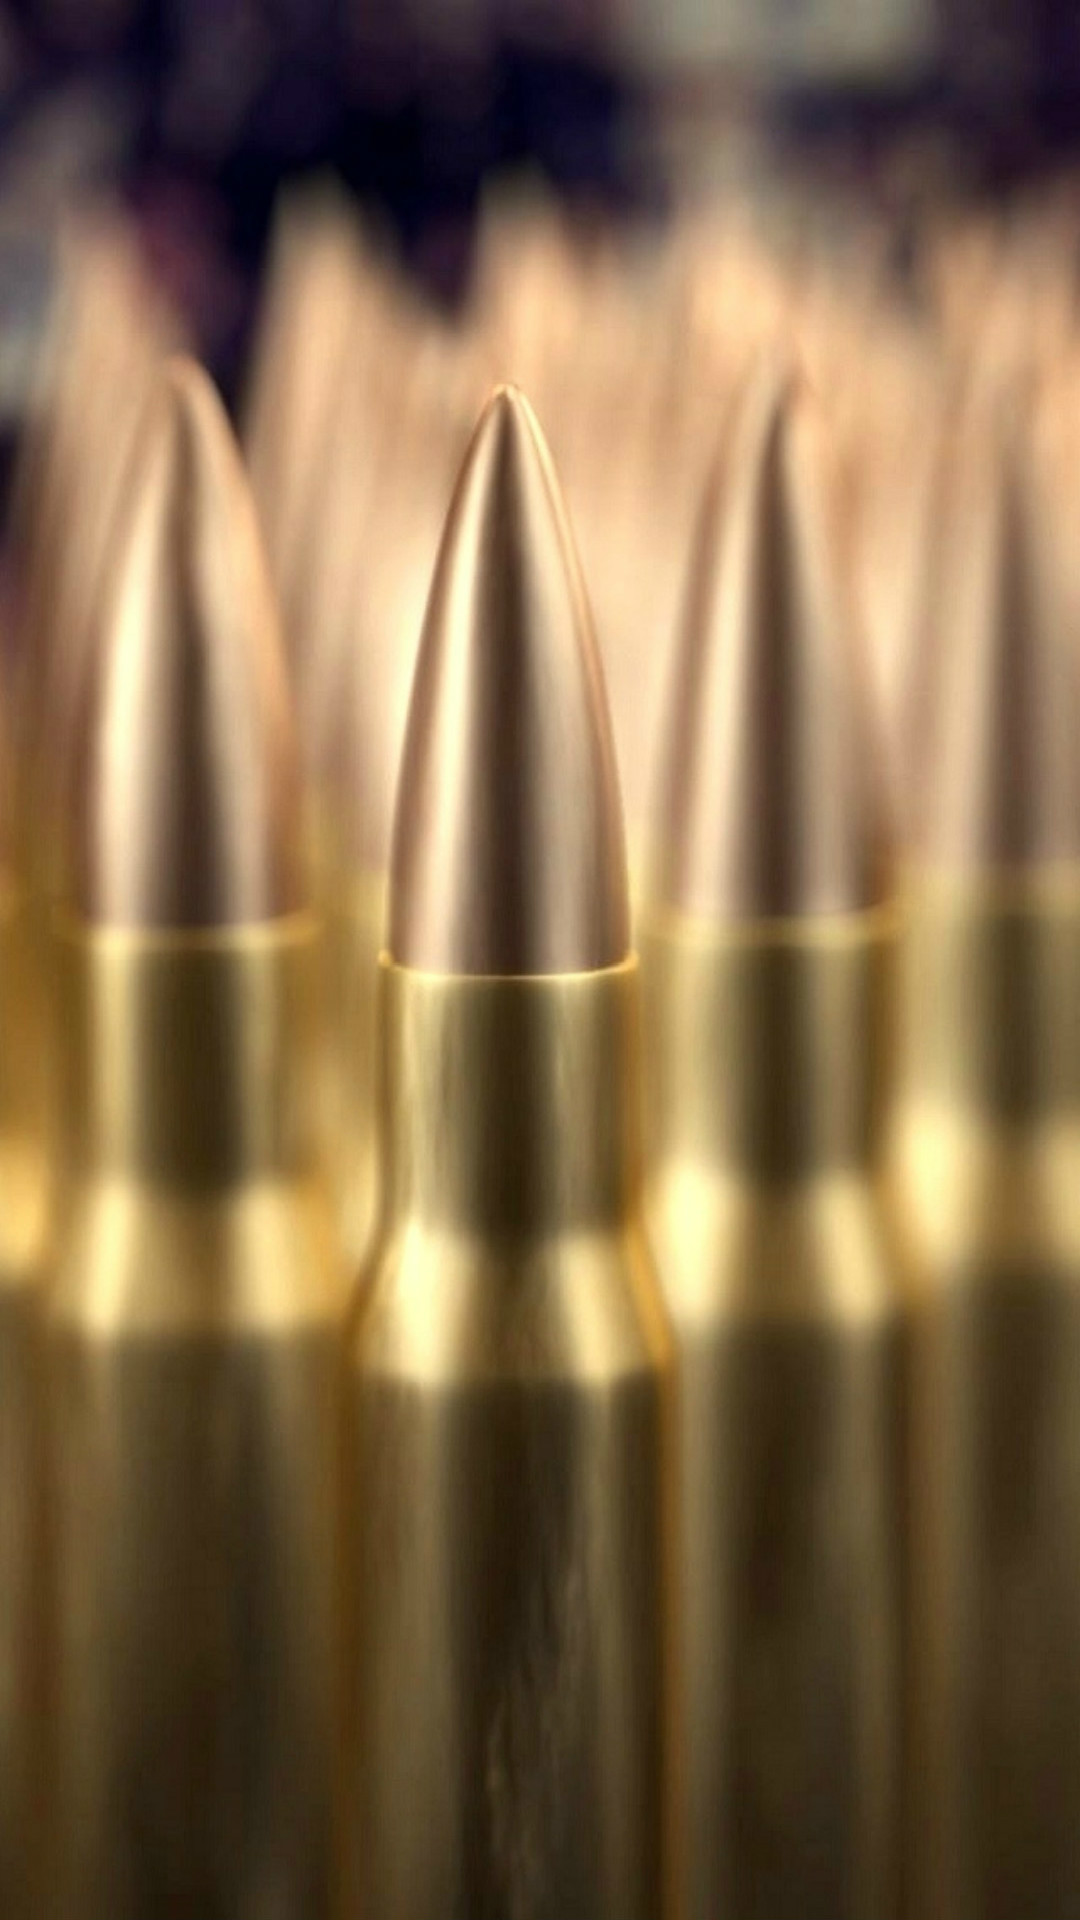 1080x1920 gold.quenalbertini: Military Bullet Pile Macro Bokeh iPhone 6 Wallpaper